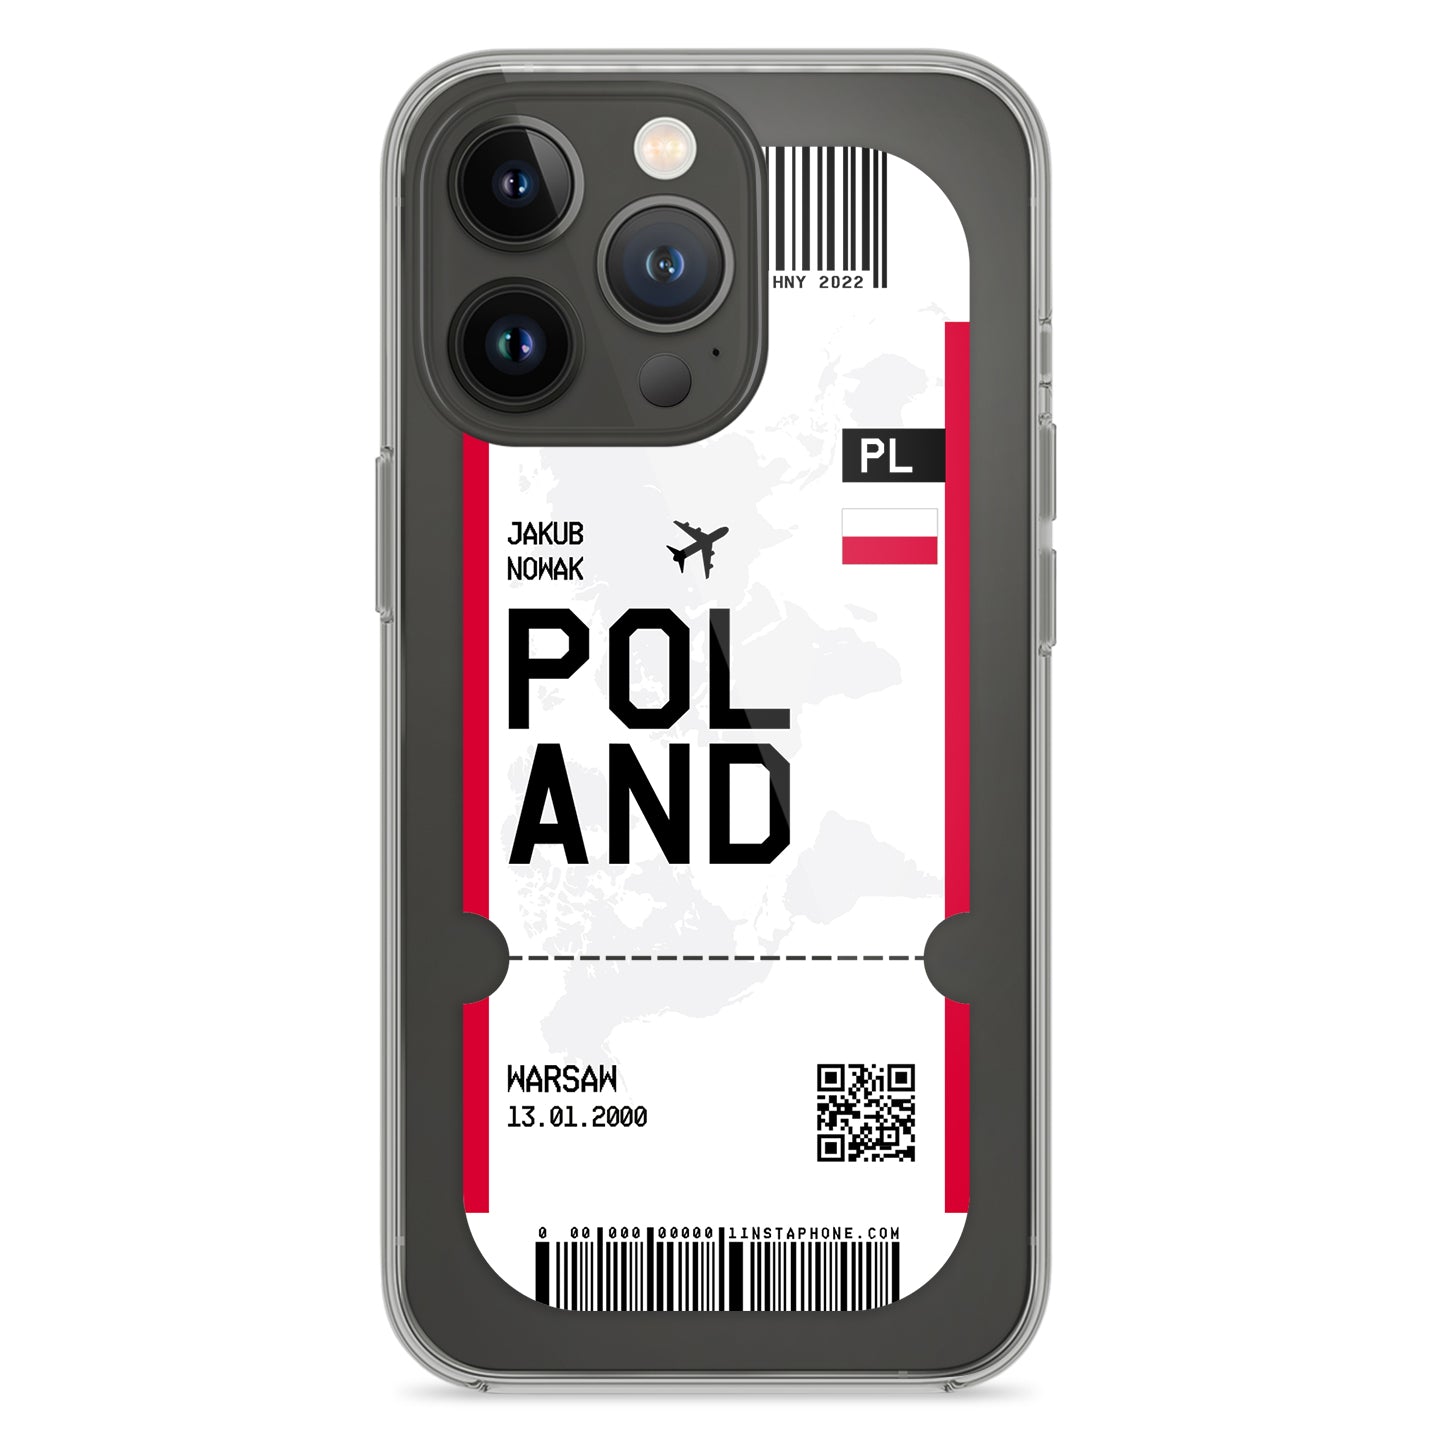 Handyhülle im Ticket Design - Polen - 1instaphone